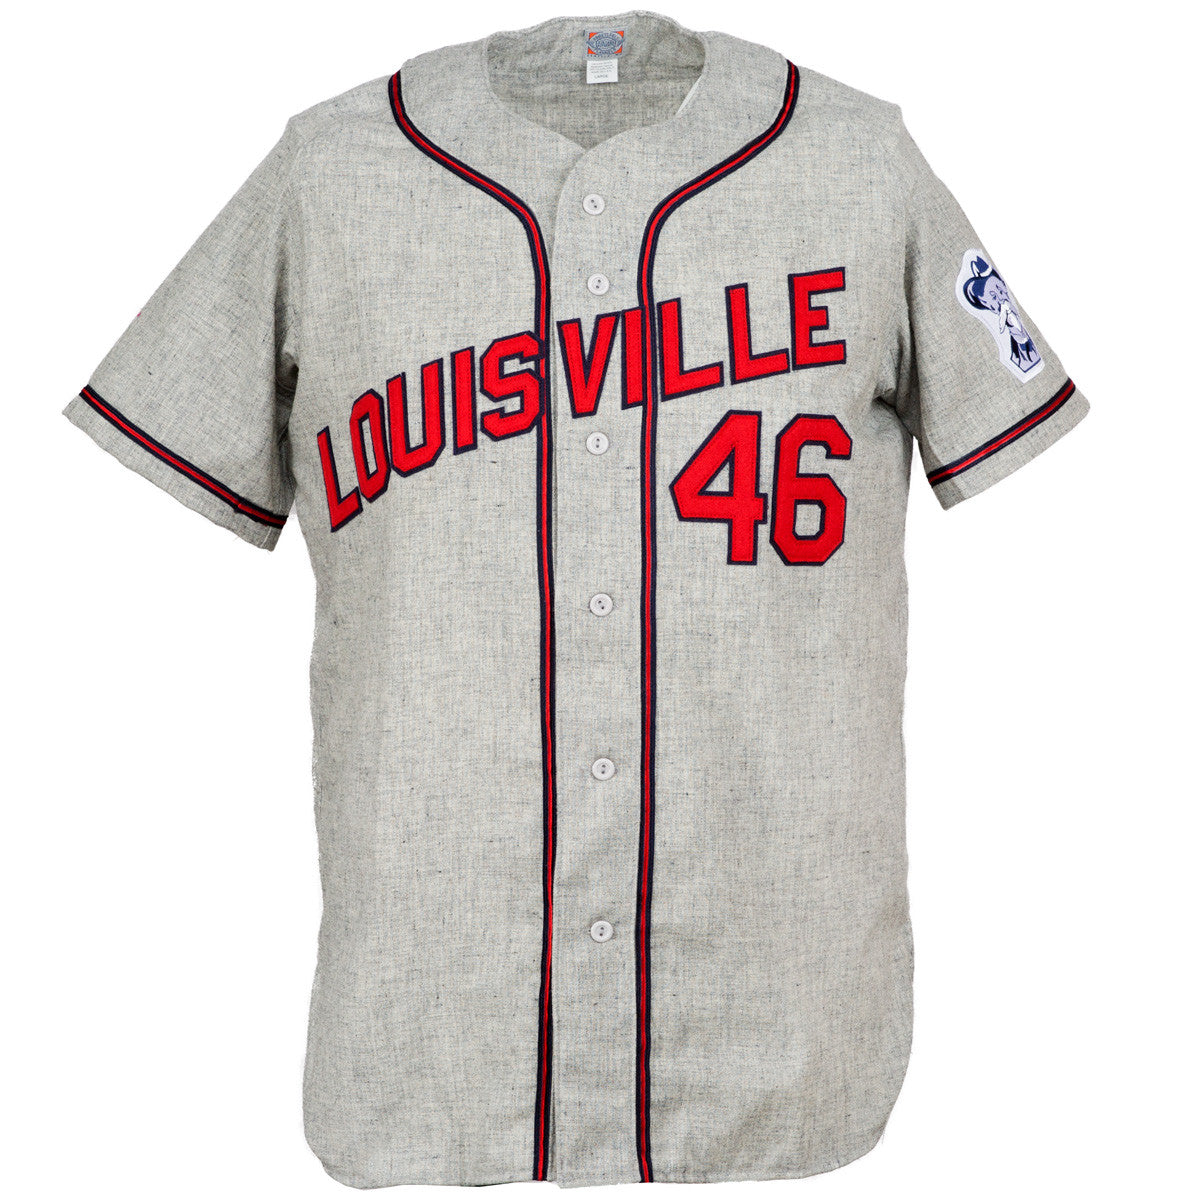 Louisville Baseball Gear, Louisville Cardinals Baseball Jerseys